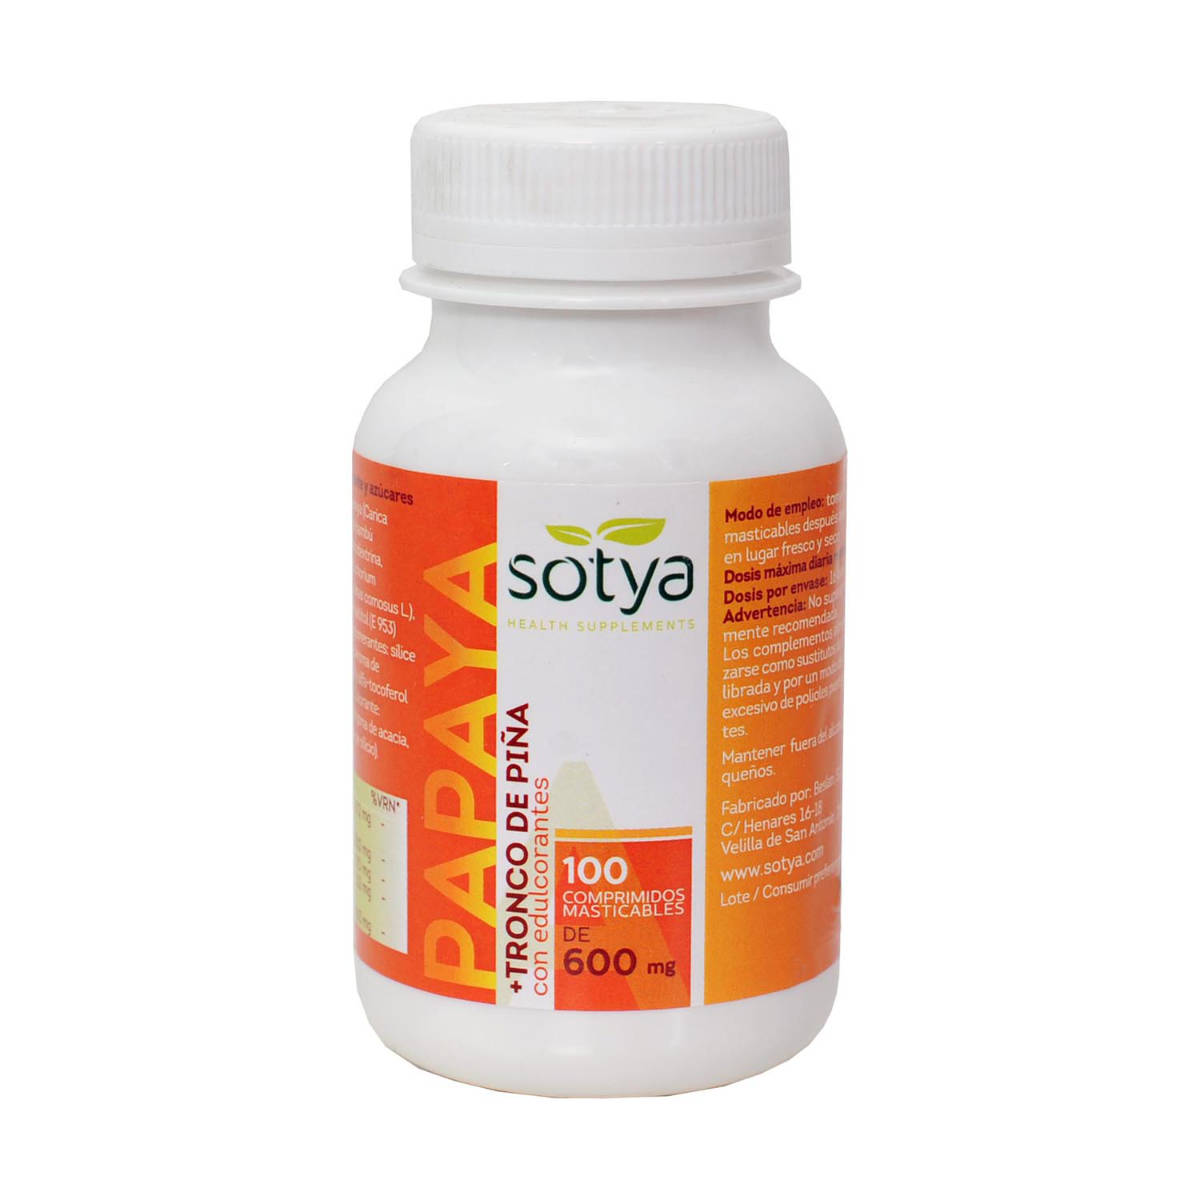 Sotya-Papaya-+-Tronco-De-Piña-600-Mg-100-Comprimidos-Biopharmacia,-Parafarmacia-online